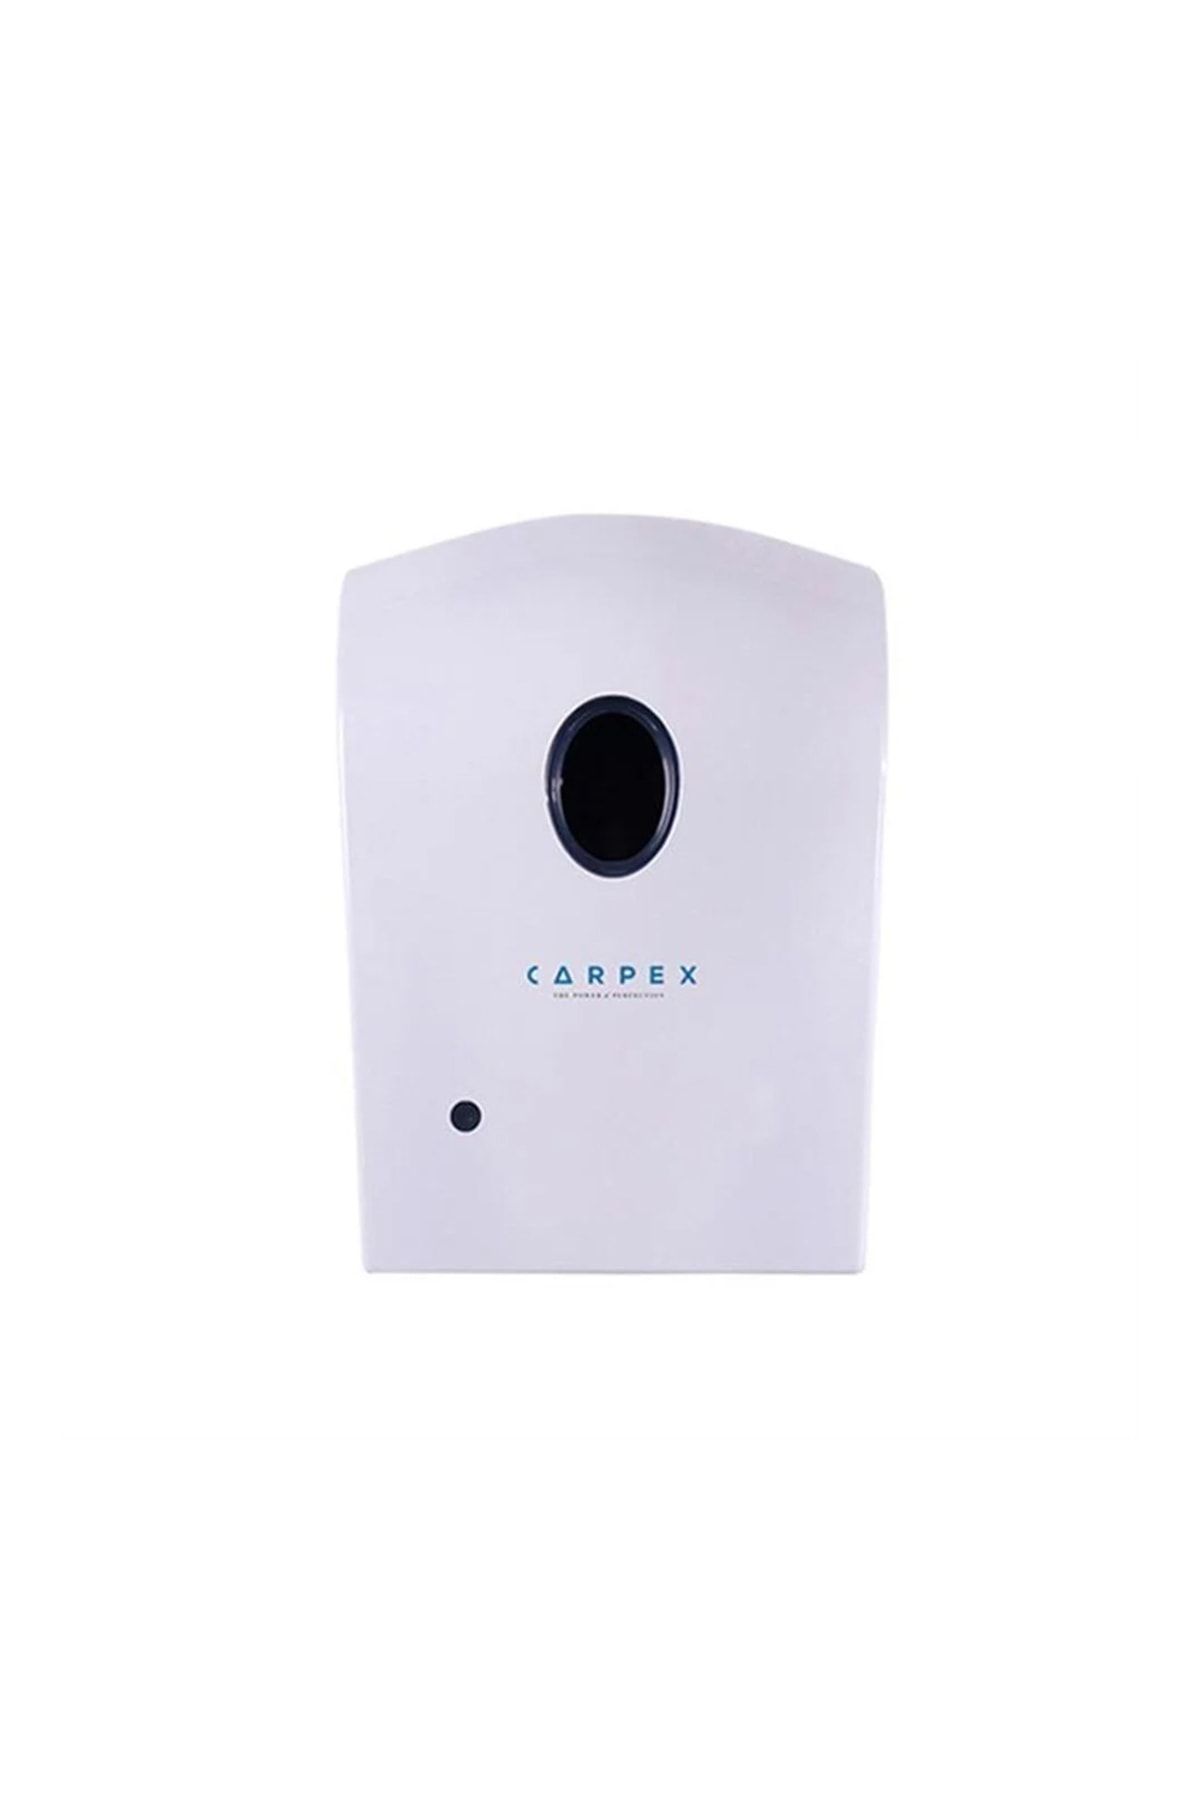 Carpex Otomatik Sensörlü Köpük Sabun Dispenseri Kartuşlu Beyaz